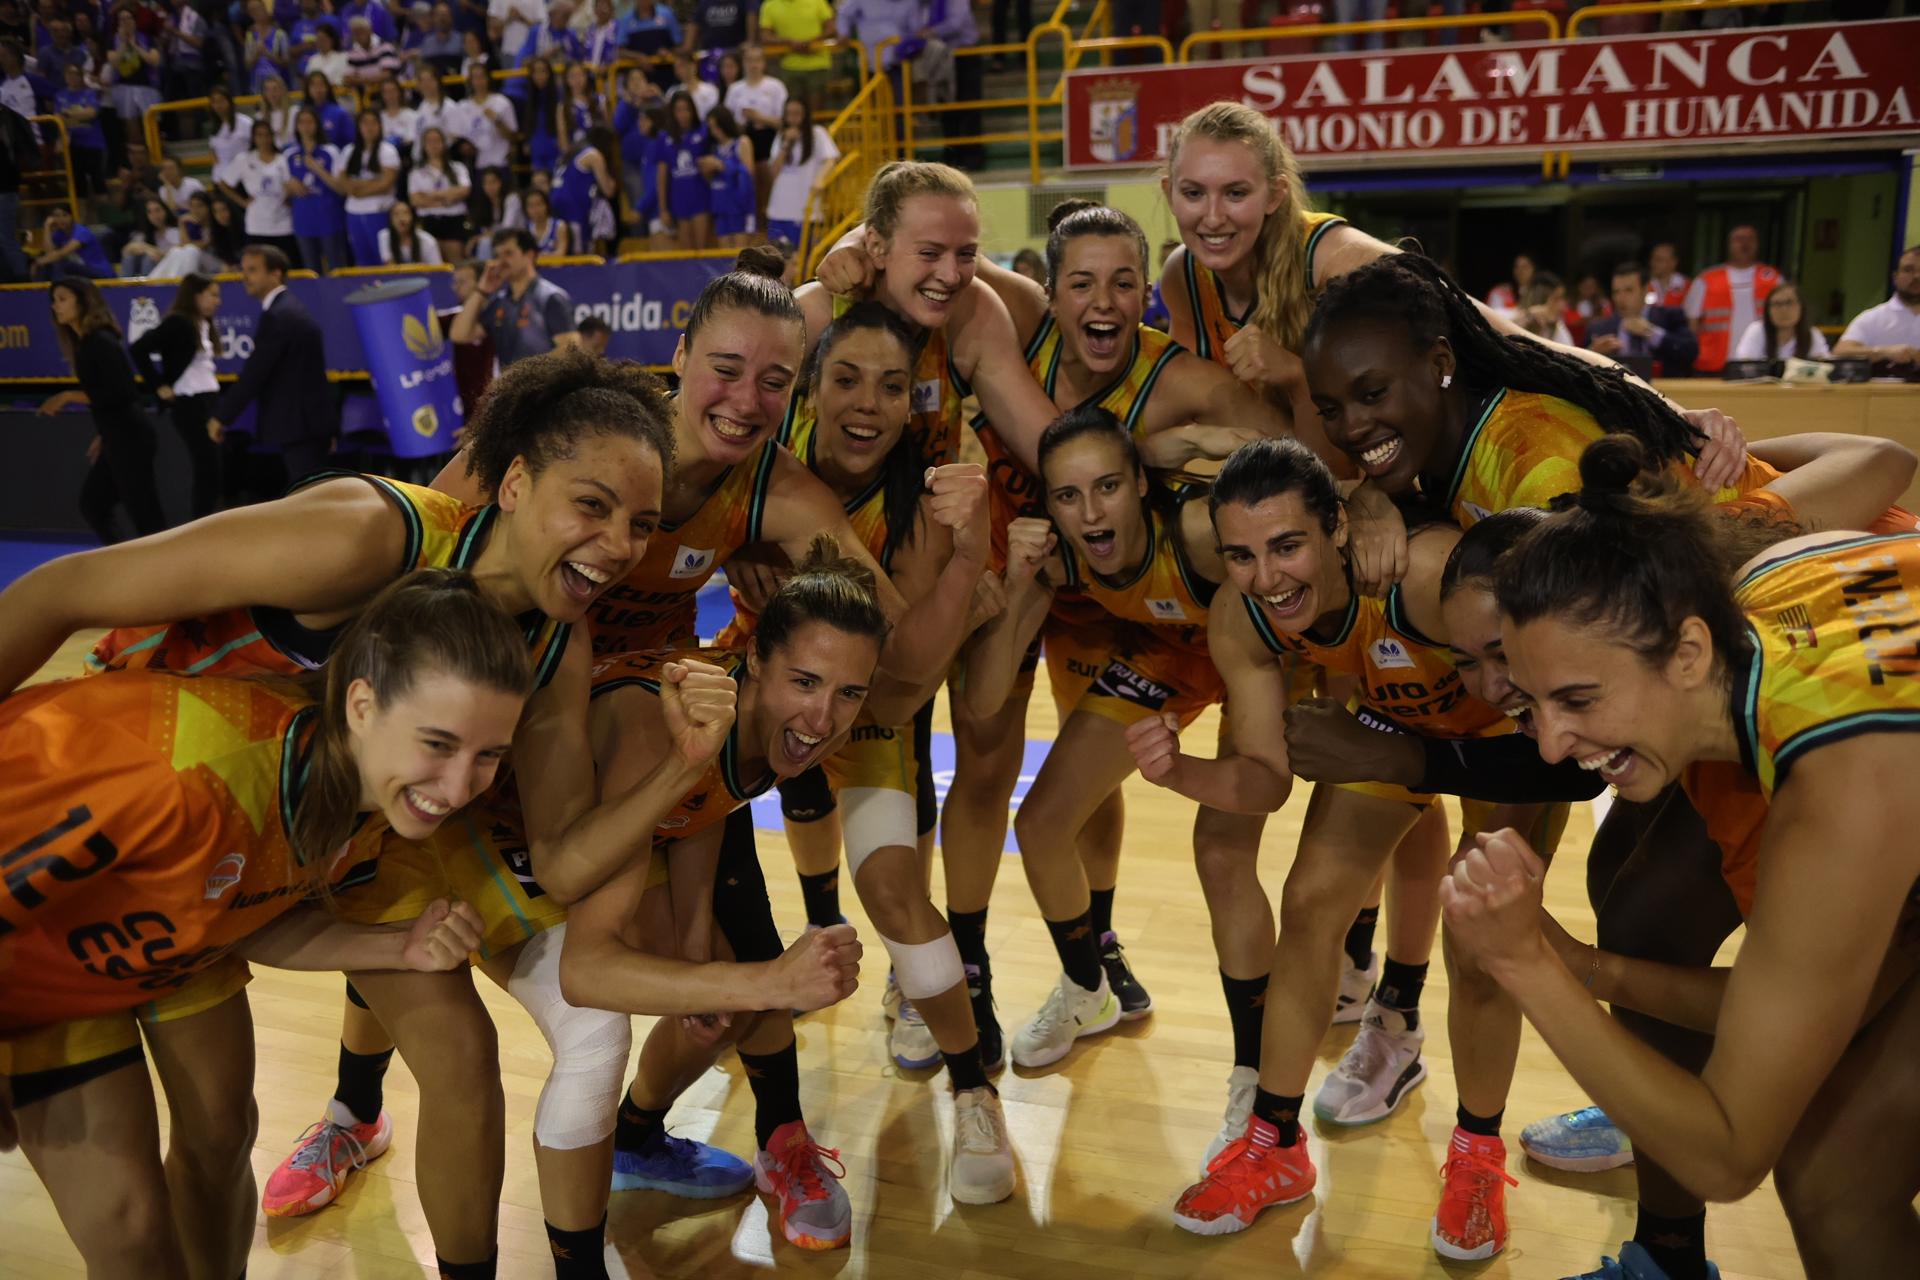 El Valencia Basket celebra su primera Liga de baloncesto femenino al vencer en un gran partido al Perfumerías Avenida (69-81), en una imagen de este domingo en Salamanca. EFE/JM García